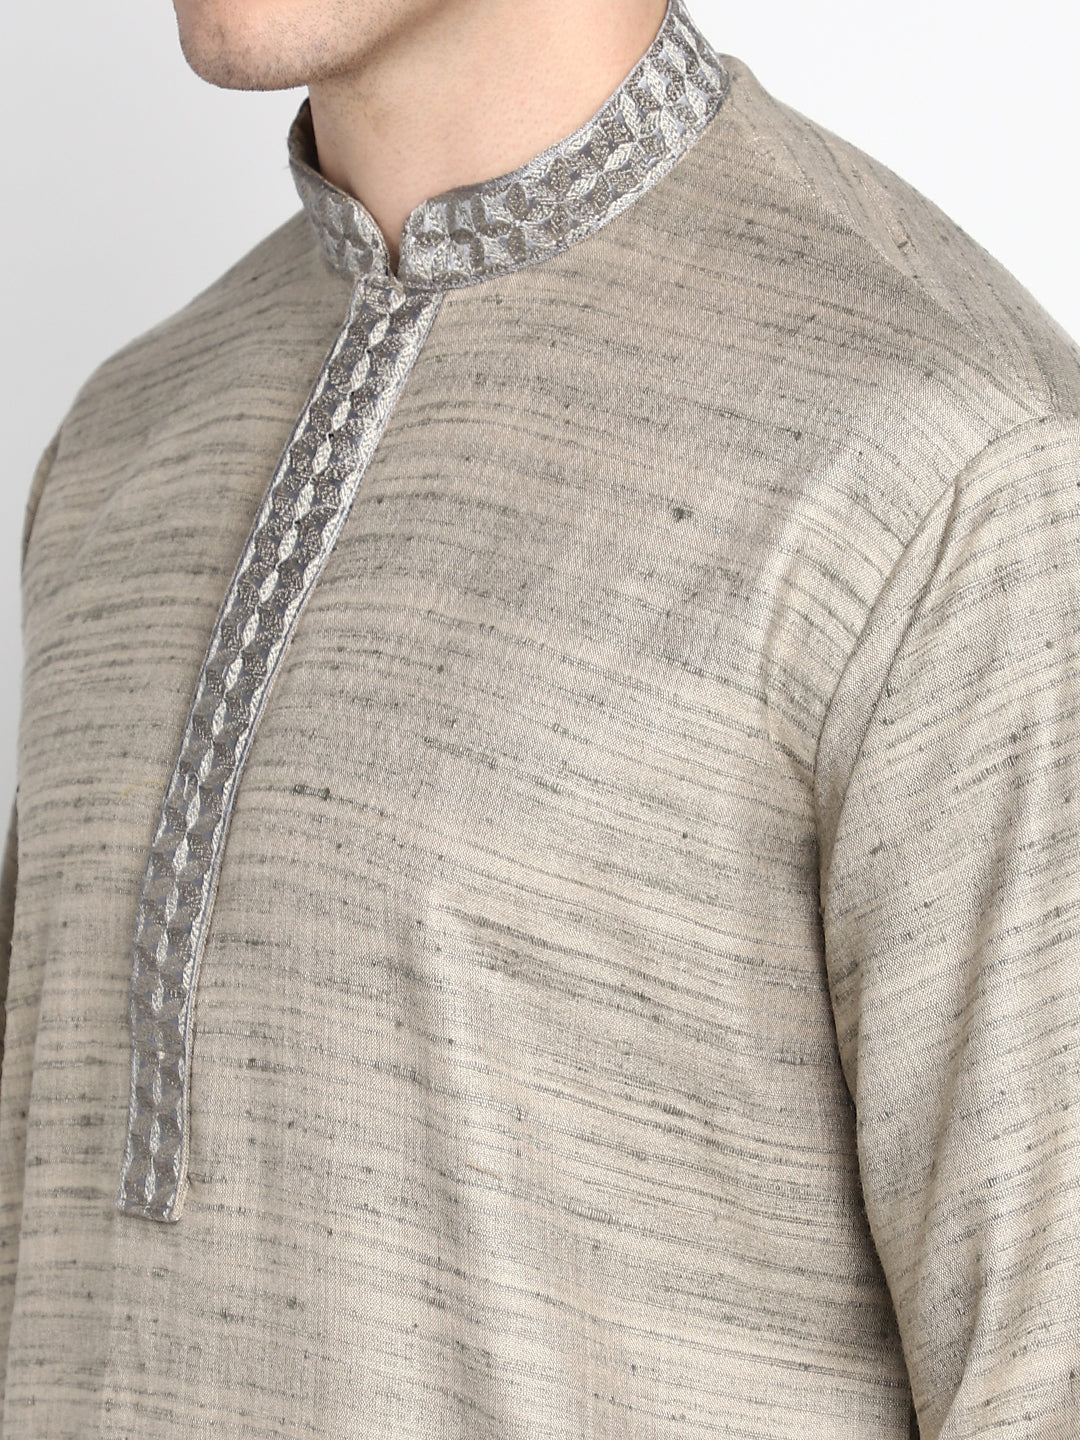 Grey Straight Embroidered Cotton Men's Kurta